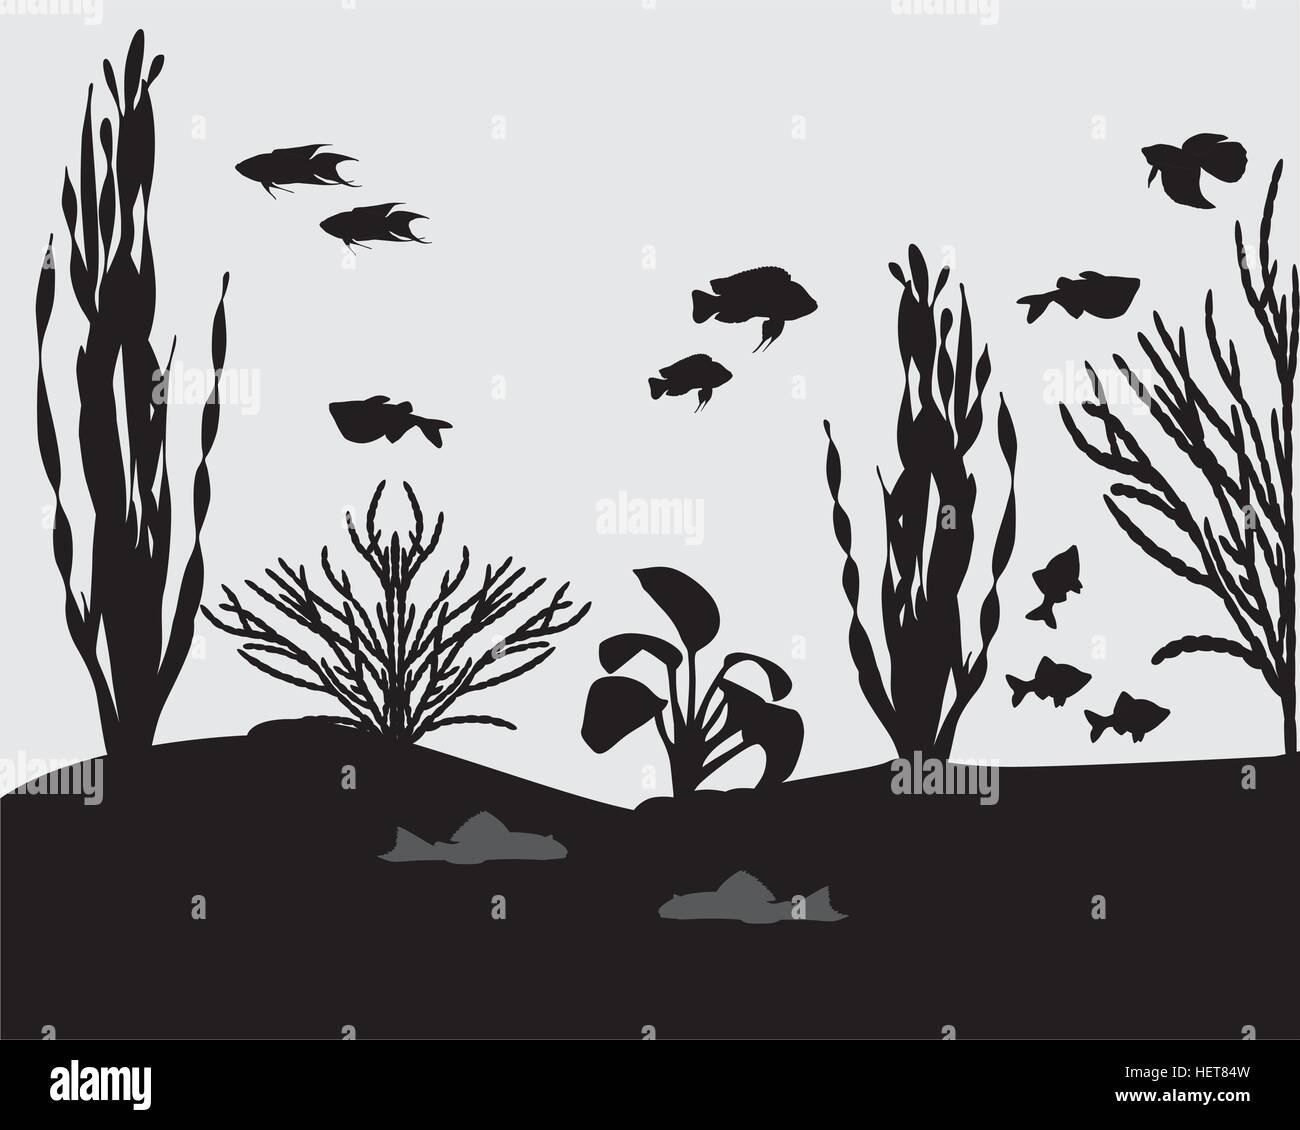 Silhouettes of fishes and algae in aquarium Stock Vector